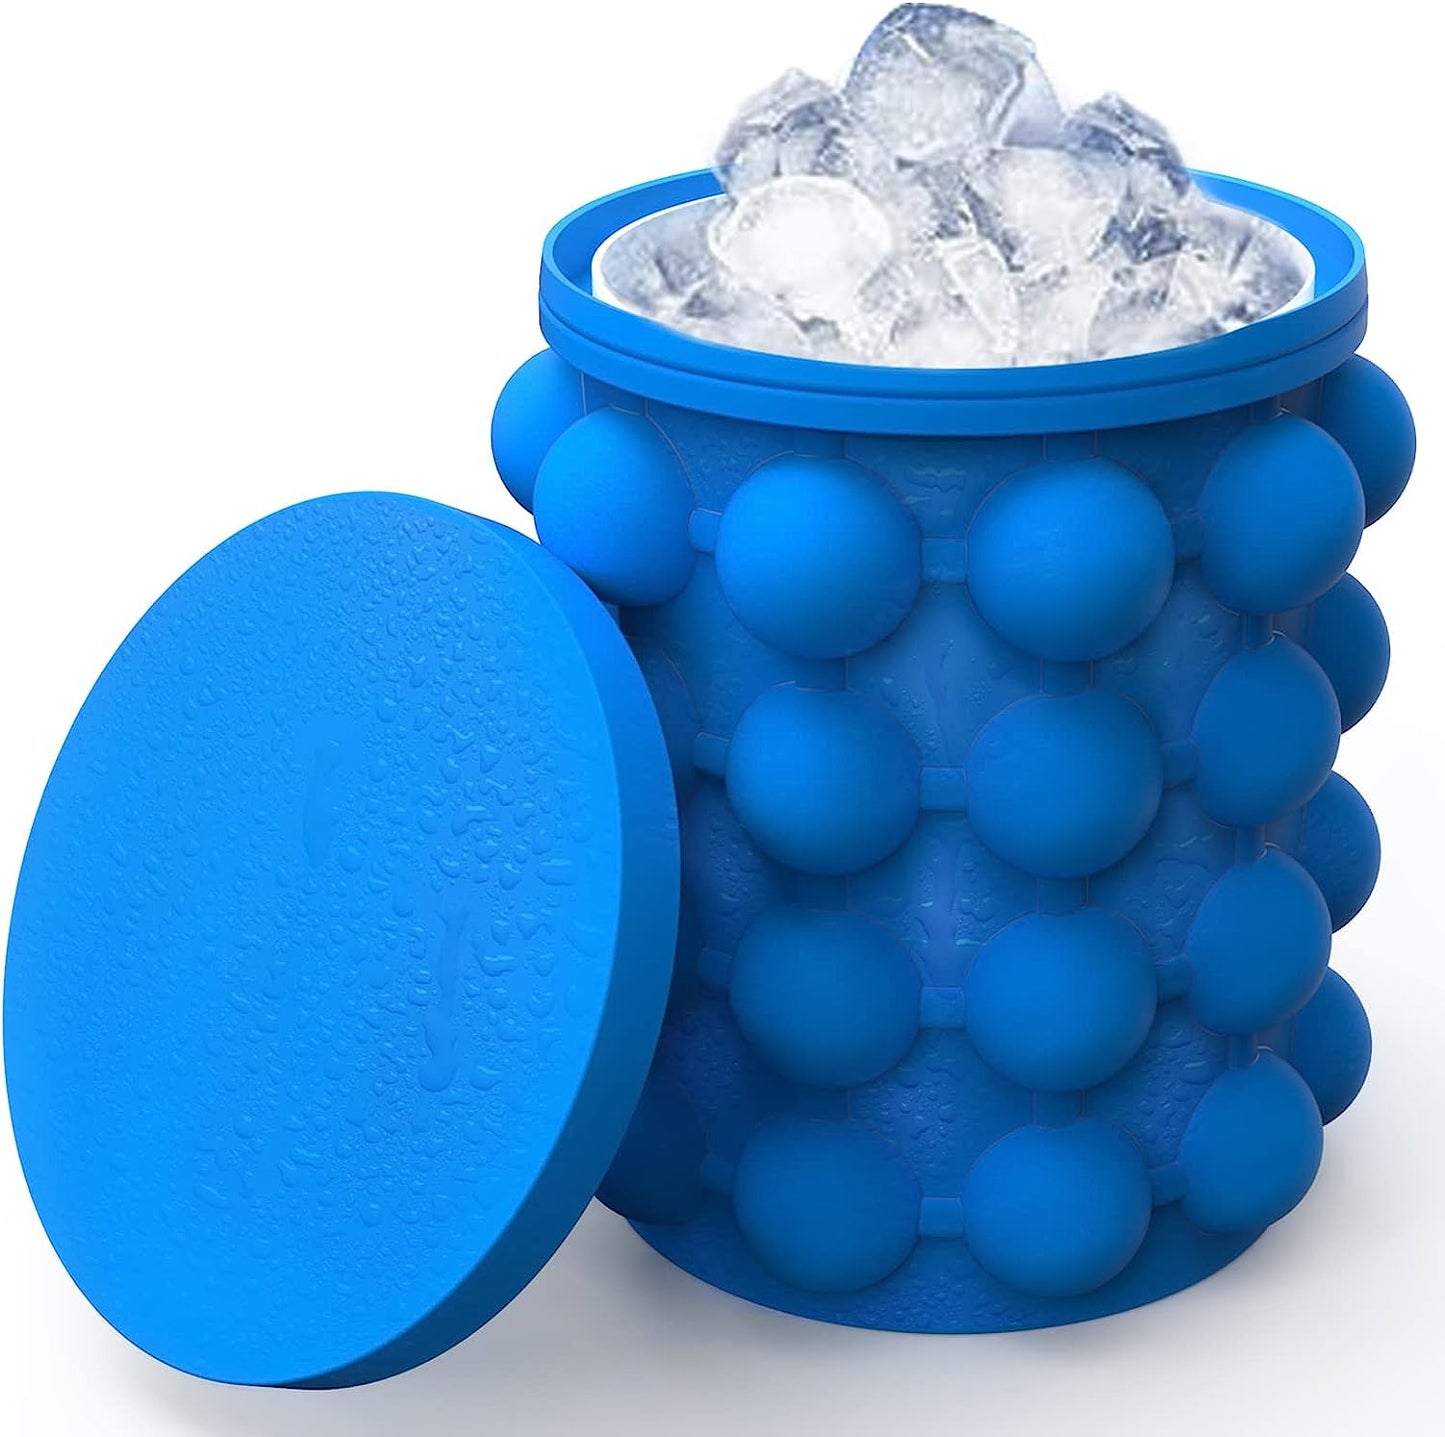 IceBucket™ | Large silicone ice cube maker!